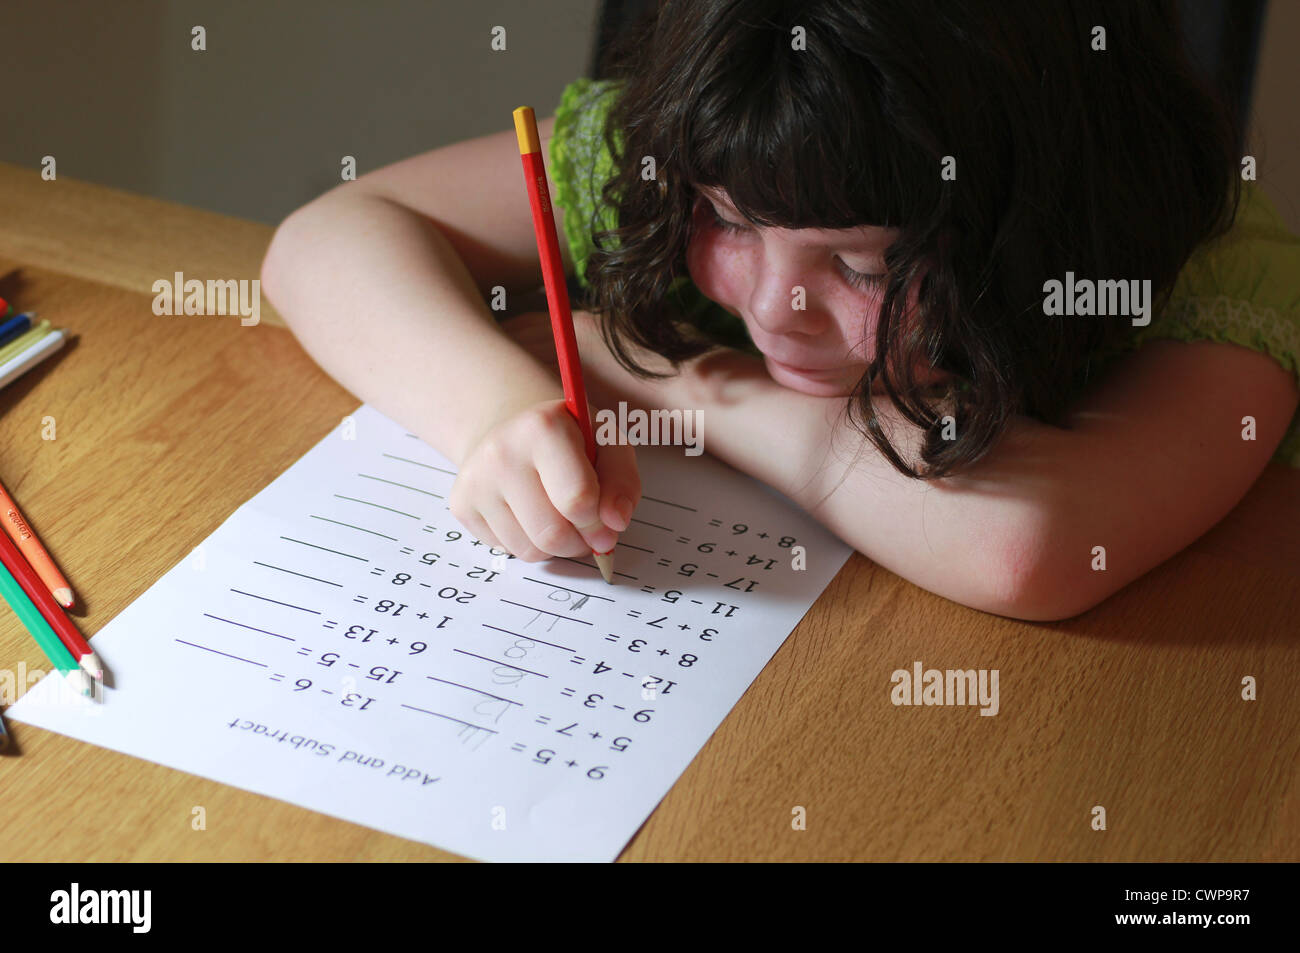 Little girl doing maths homework Stock Photo